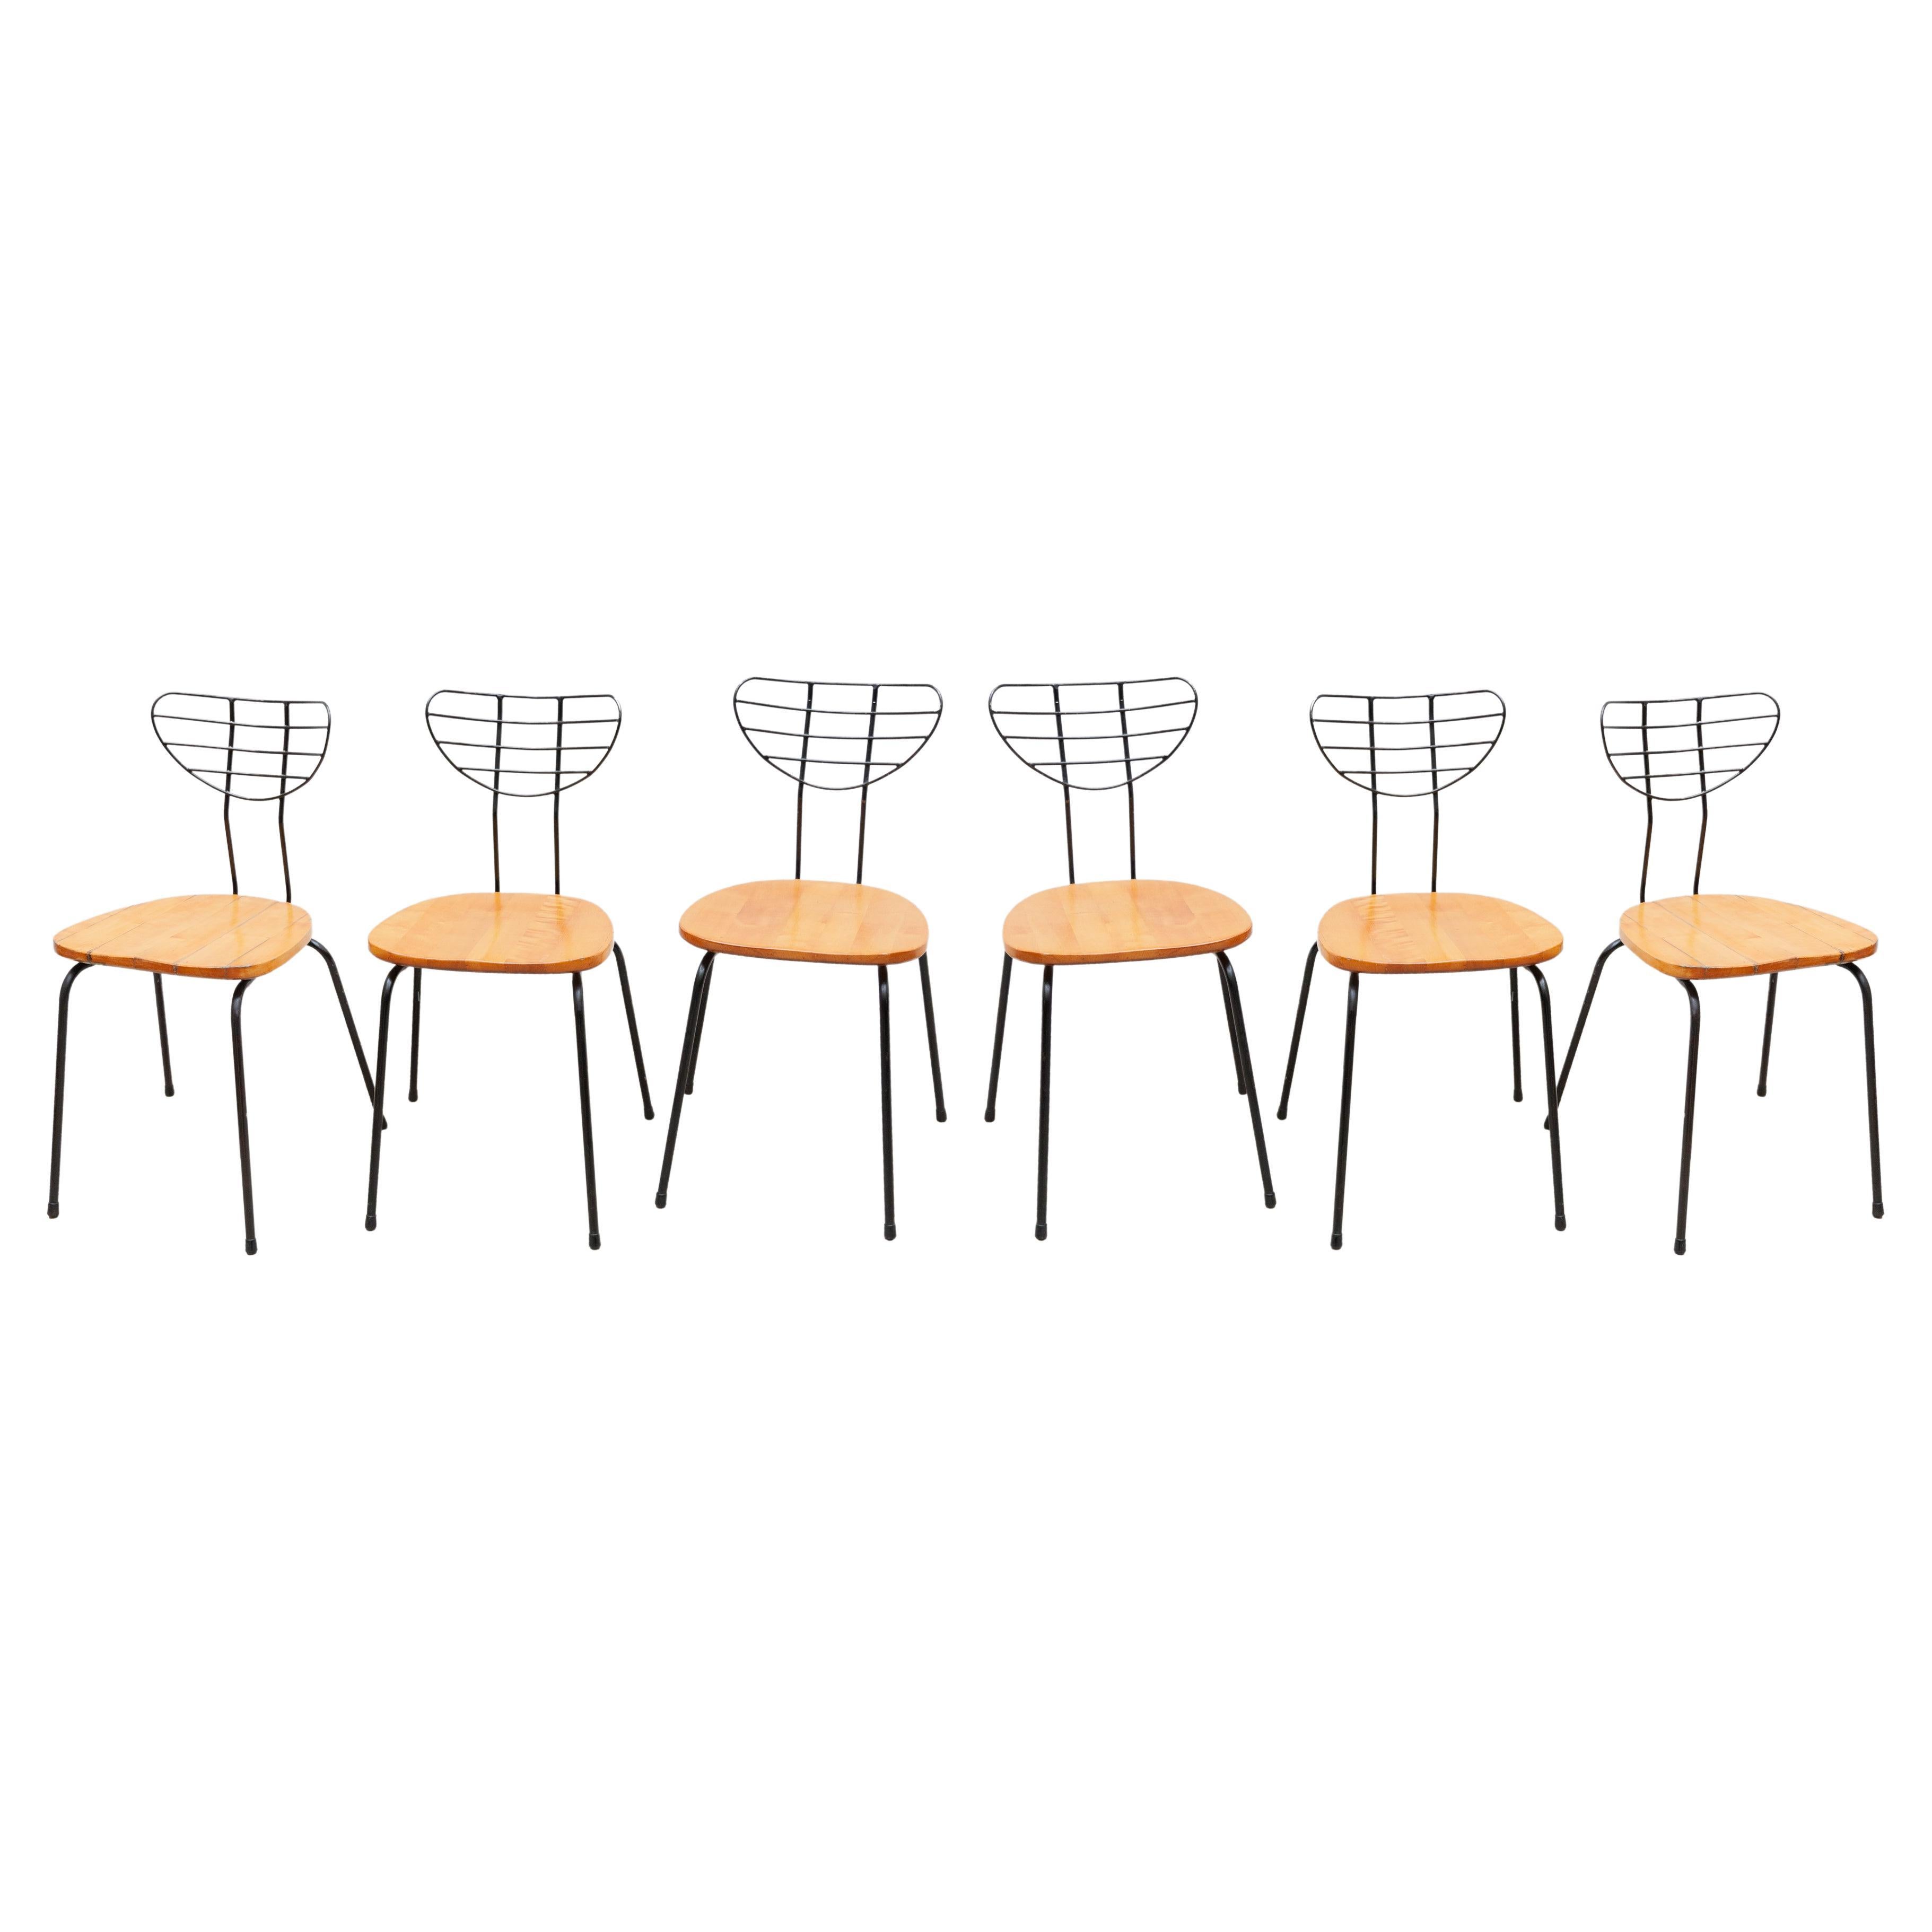 Set of Six "Radar" Chairs Designed by Willy Van Der Meeren for Tubax, Belgium